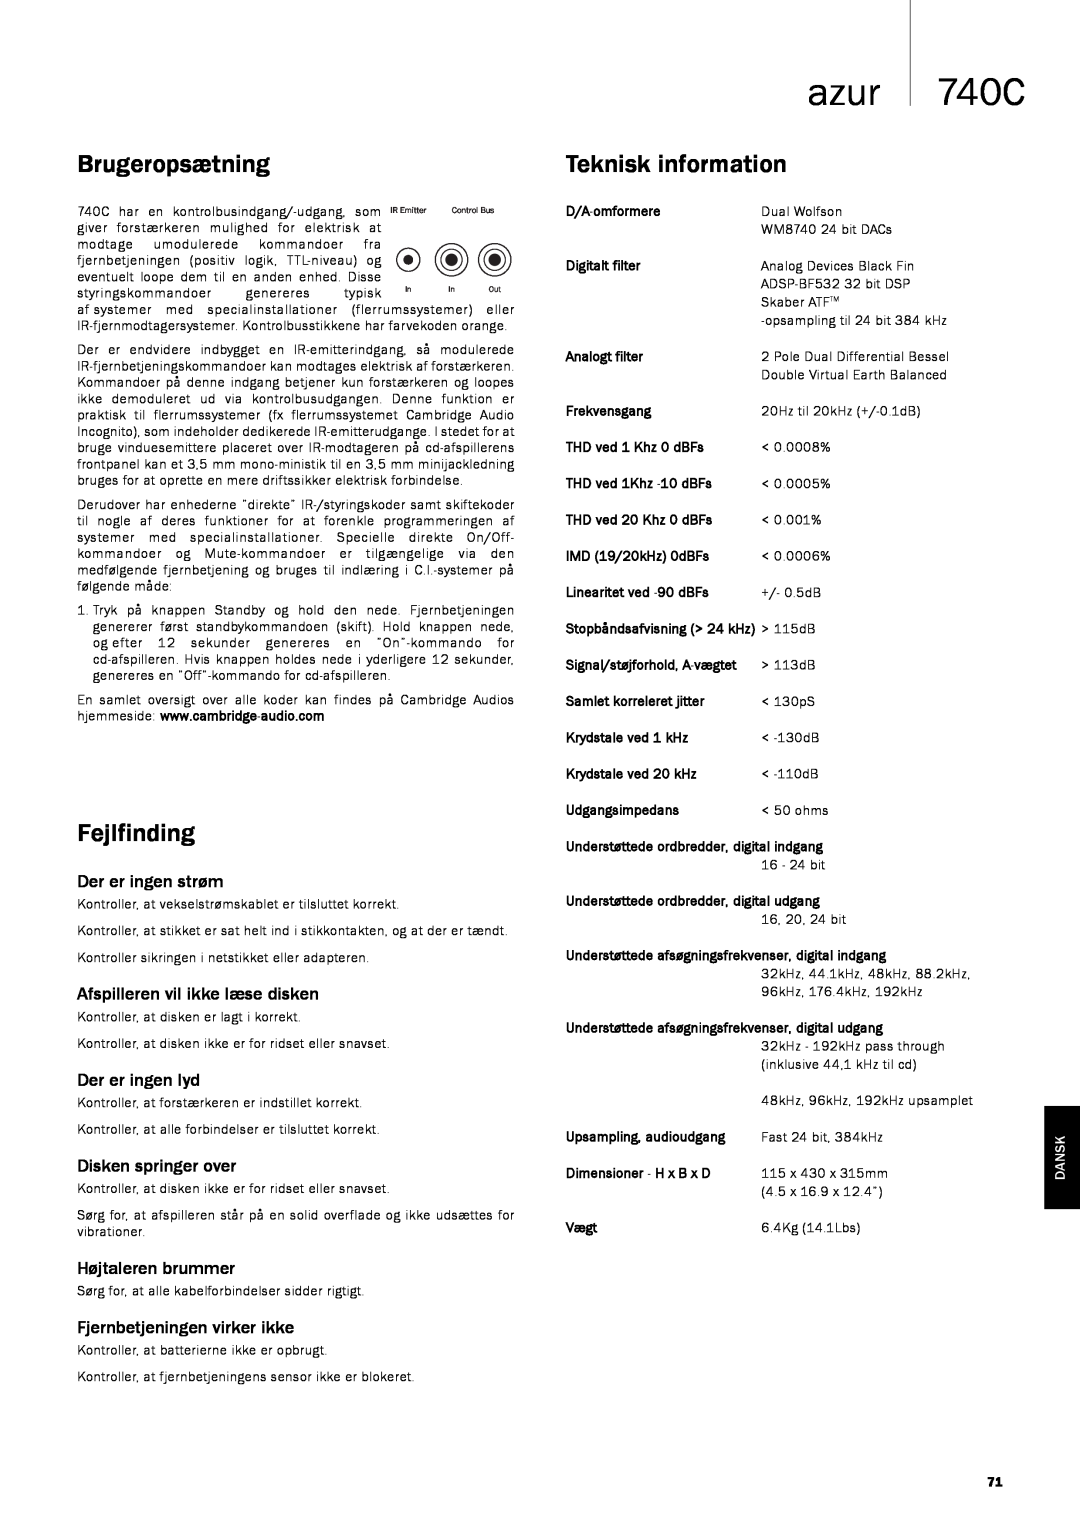 Cambridge Audio 740C Brugeropsætning, Fejlfinding, Teknisk information, azur, Der er ingen strøm, Der er ingen lyd, Dansk 